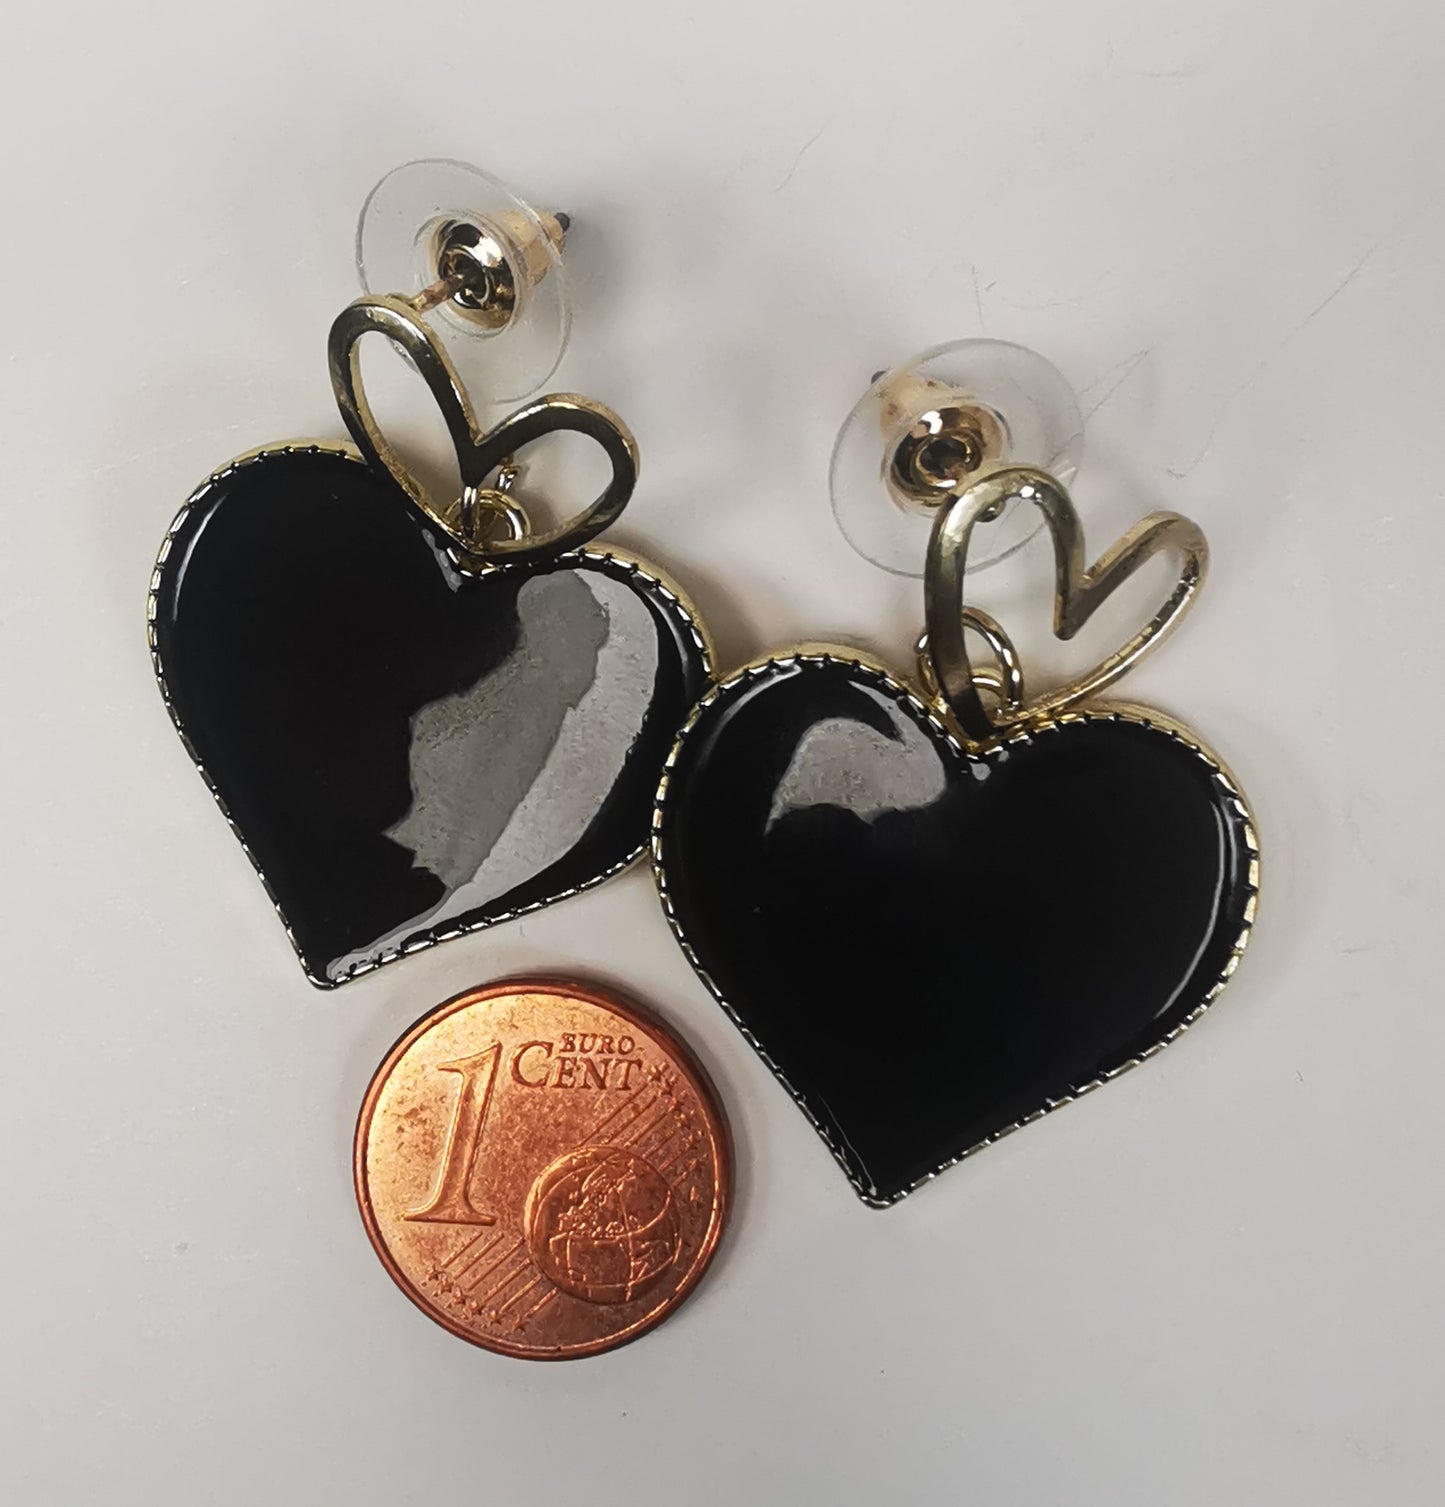 Paire de boucles d'oreilles, un petit coeur doré sur clou sur lequel pend un coeur noir sur entourage et fond doré posée à coté d'une pièce de 1 centime.